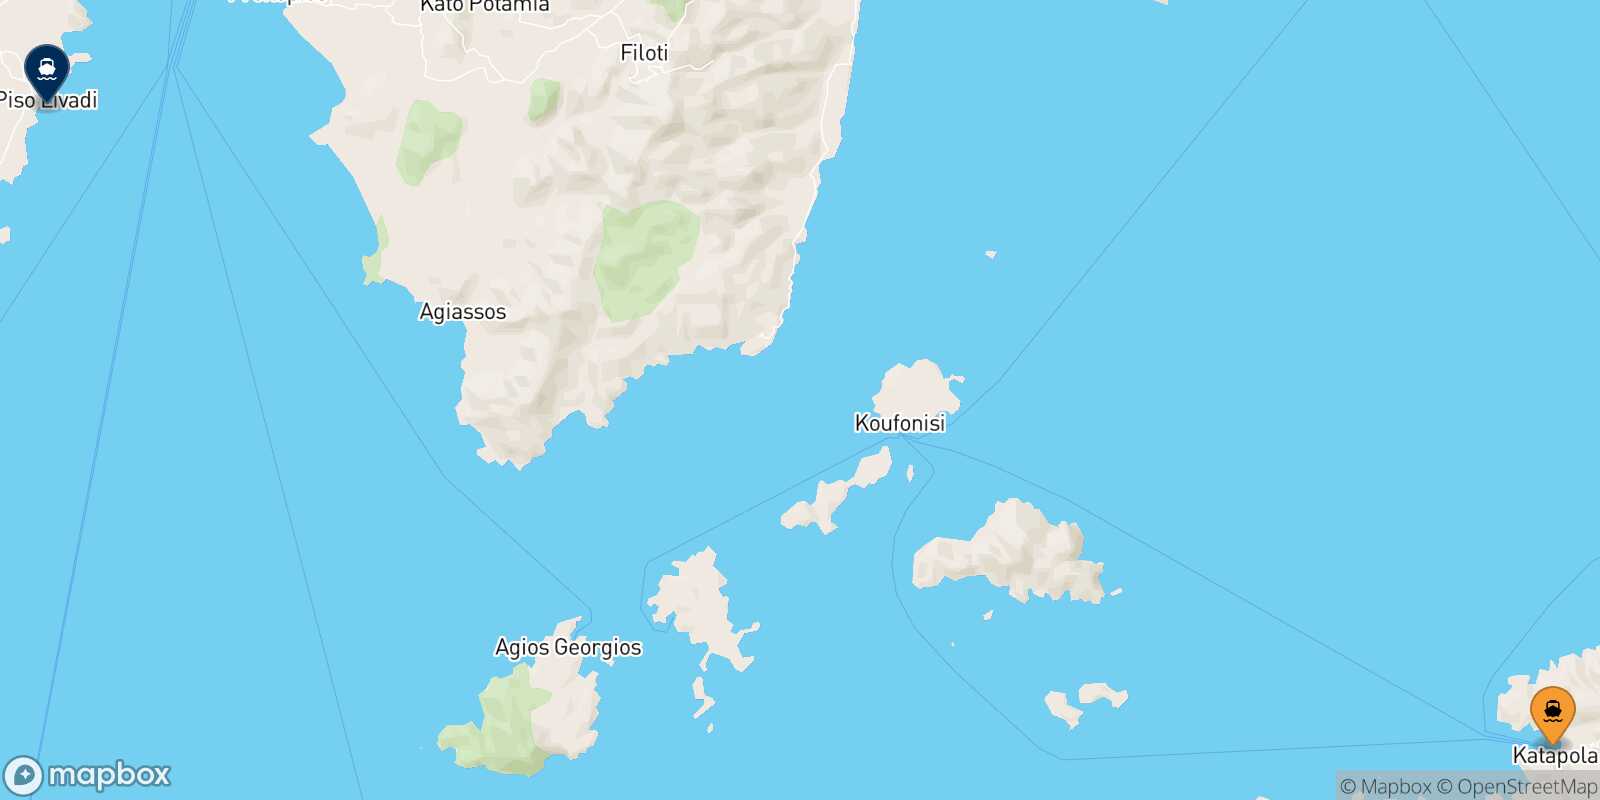 Katapola (Amorgos) Piso Livadi (Paros) route map